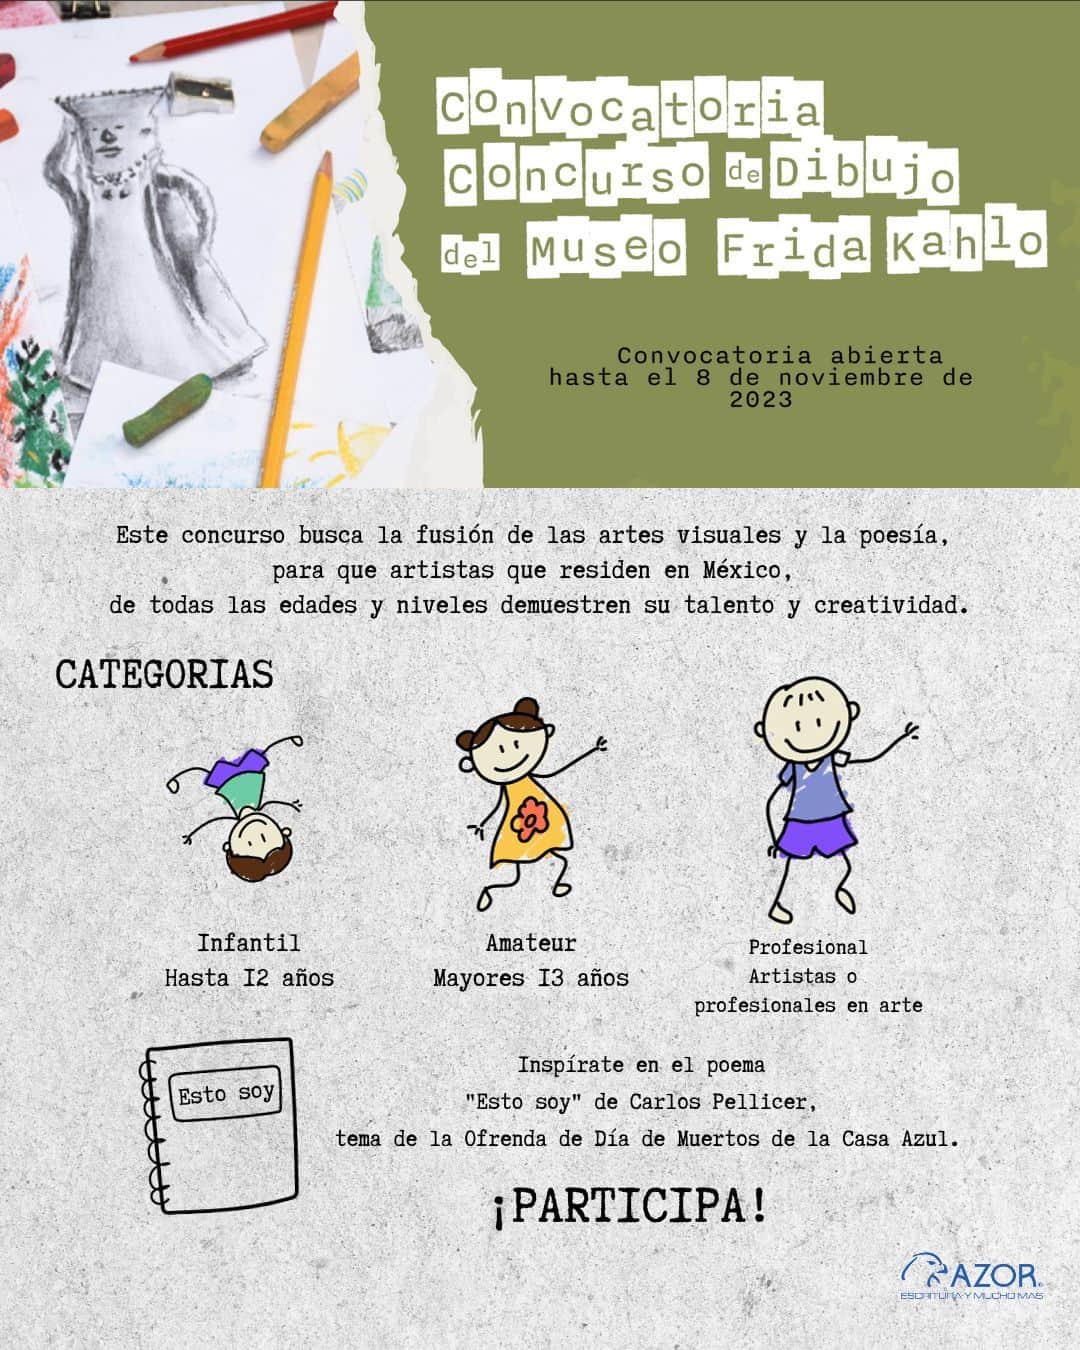 フリーダ・カーロ記念館のインスタグラム：「¿𝘁𝗲 𝗴𝘂𝘀𝘁𝗮 𝗱𝗶𝗯𝘂𝗷𝗮𝗿? ¡participan creadores de todas las edades en México a nuestro Concurso de Dibujo del @museofridakahlo! ��🎨 Inspirados en el poema "Esto soy" de Carlos Pellicer, tema de la ofrenda de día de muertos.   🖌️ 𝗘𝗻𝘃í𝗮 𝘁𝘂 𝗼𝗯𝗿𝗮 𝗮𝗻𝘁𝗲𝘀 𝗱𝗲𝗹 𝟬𝟴 𝗱𝗲 𝗻𝗼𝘃𝗶𝗲𝗺𝗯𝗿𝗲, 𝟮𝟬𝟮𝟯.��  Detalles click en el enlace: https://bit.ly/3QyV4Tj  🫀 #MuseoFridaKahlo #art #arte 🇲🇽 #México #CDMX #MexicoCity 🧳 #travel #Coyoacán #Museum #Museo #MuseosCDMX #travelgram 💀 #DíadeMuertos #Ofrenda #Concurso #Dibujo   Agradecemos el apoyo de @grupoazormexico #GrupoAzor #Azor #EsDeAzor #EscrituraYMuchoMás #GrupoAzorMéxico」